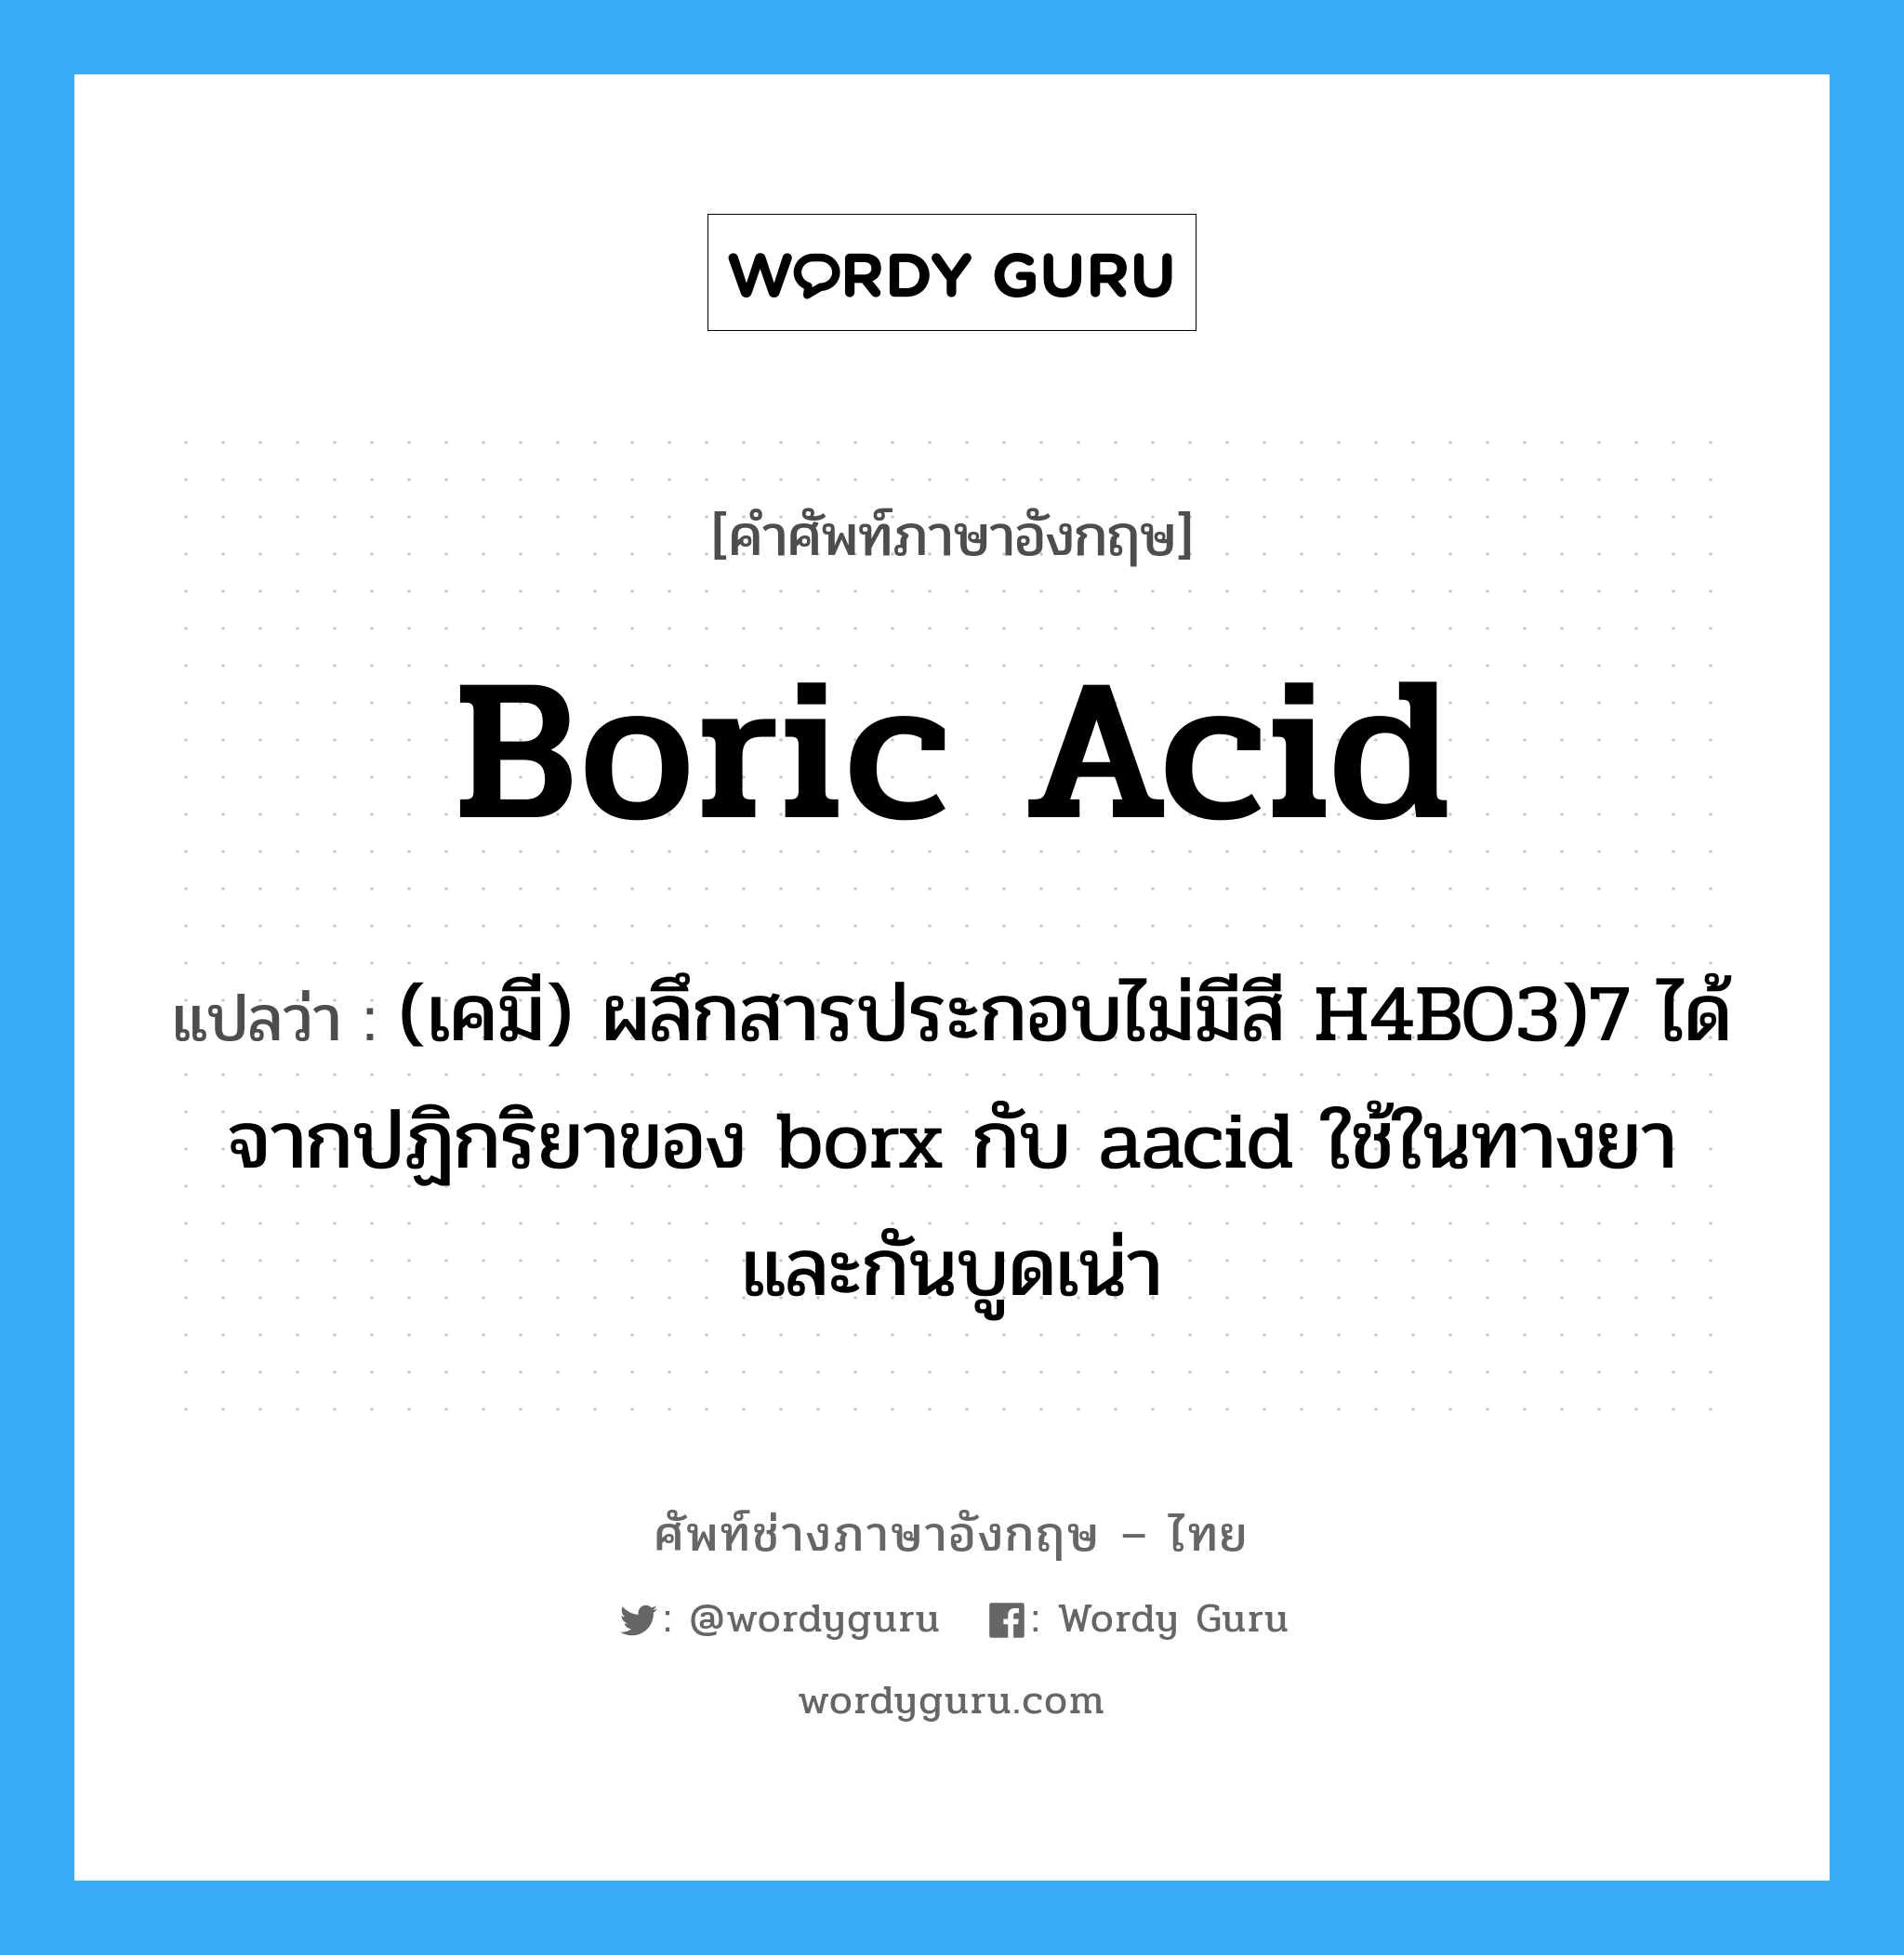 boric acid แปลว่า?, คำศัพท์ช่างภาษาอังกฤษ - ไทย boric acid คำศัพท์ภาษาอังกฤษ boric acid แปลว่า (เคมี) ผลึกสารประกอบไม่มีสี H4BO3)7 ได้จากปฏิกริยาของ borx กับ aacid ใช้ในทางยาและกันบูดเน่า